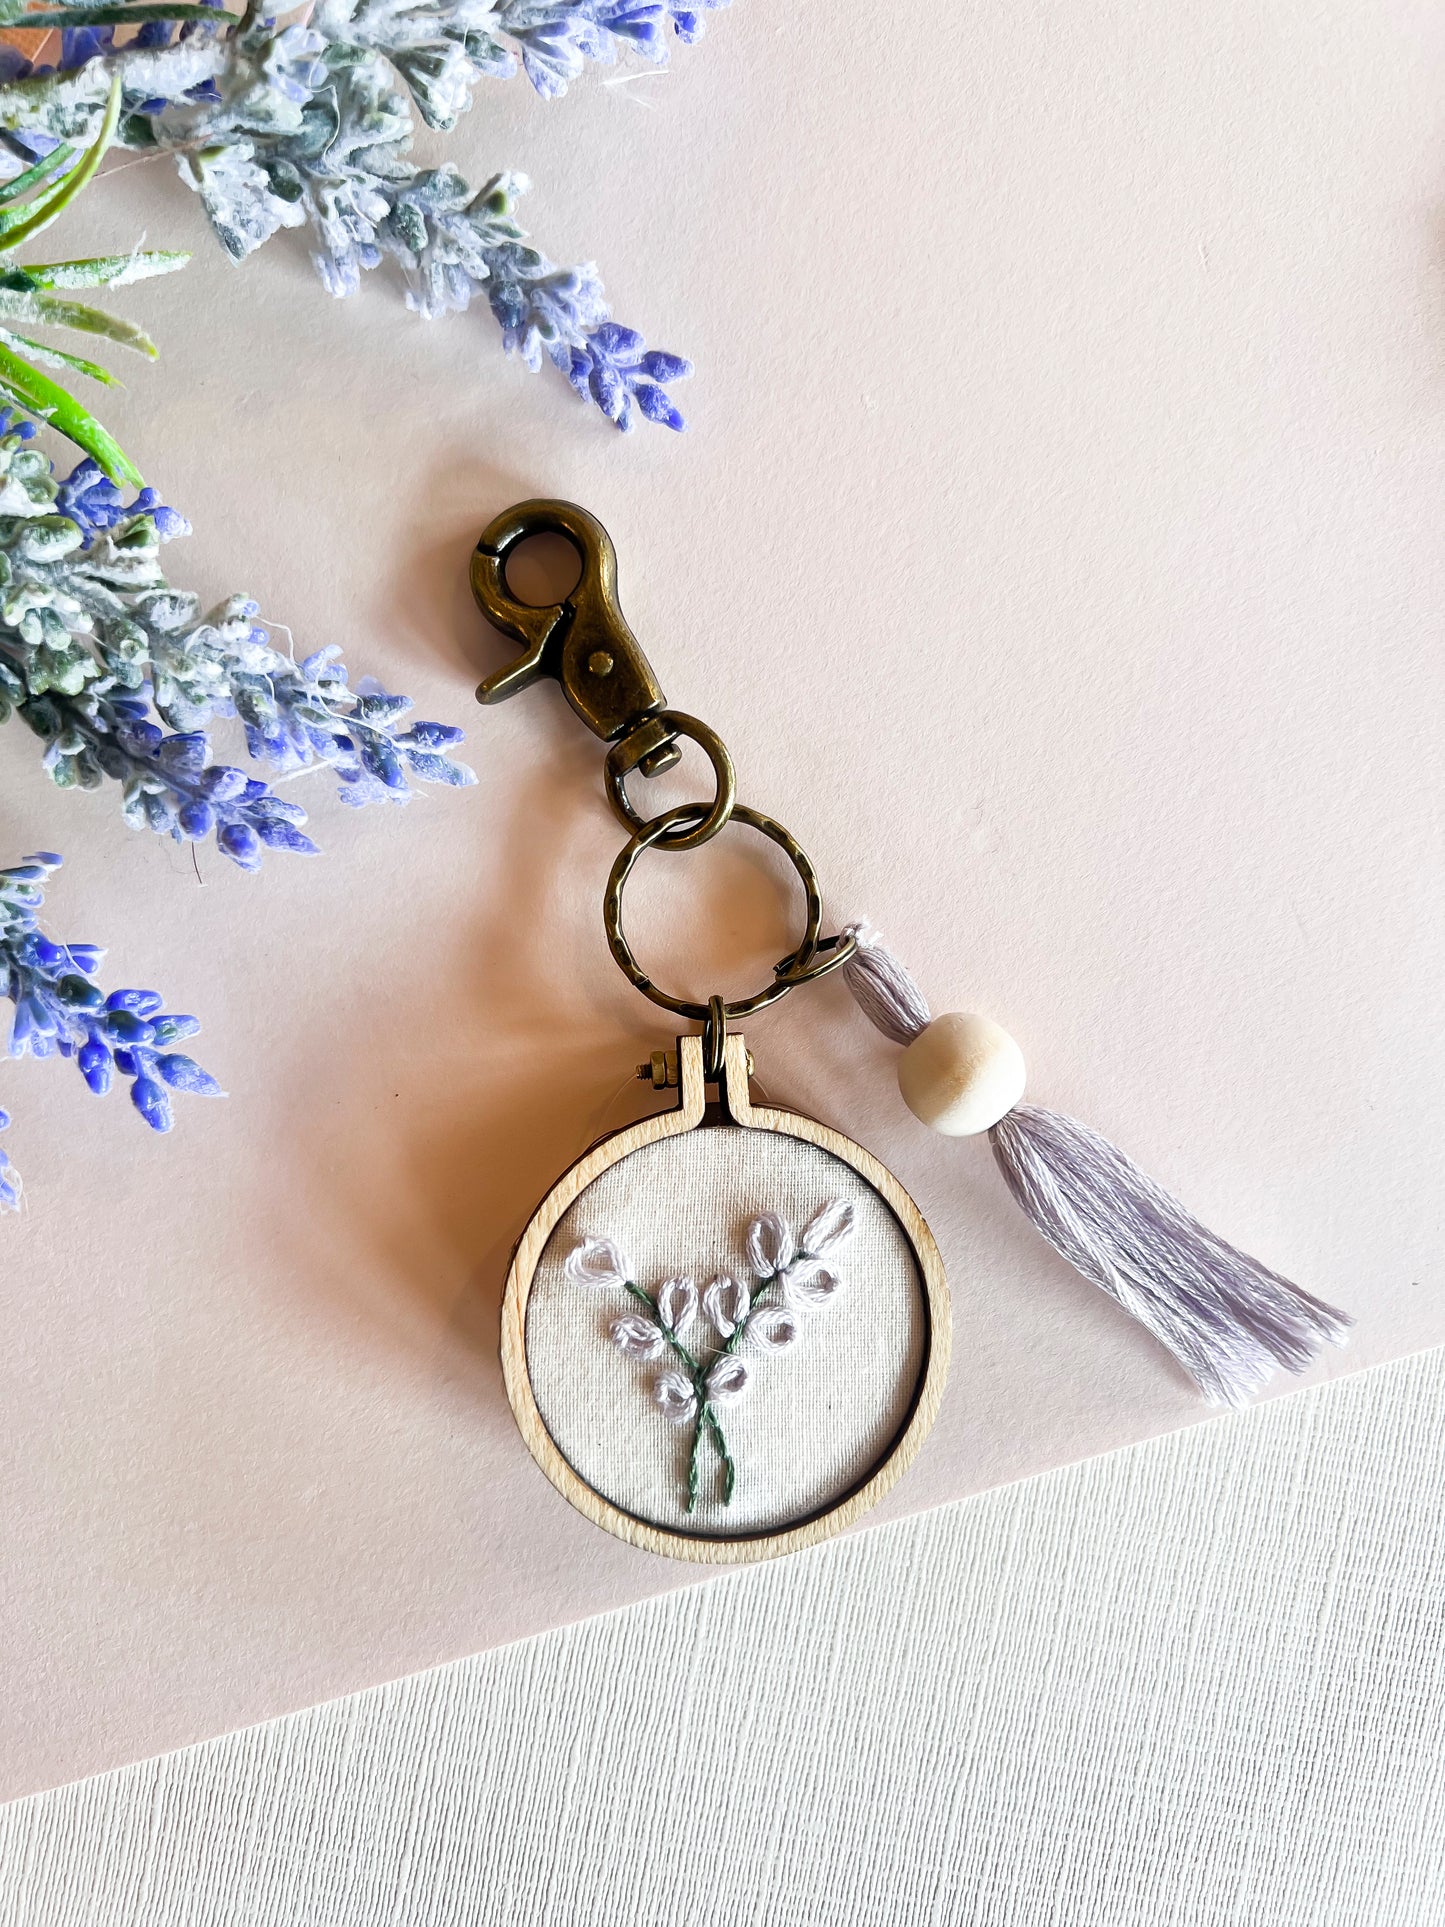 Shop Suey Boutique Hand Embroidered Floral Keychains | Handmade Flower Keychain | Boho Natural Wood Thread Tassel Orange Wildflower